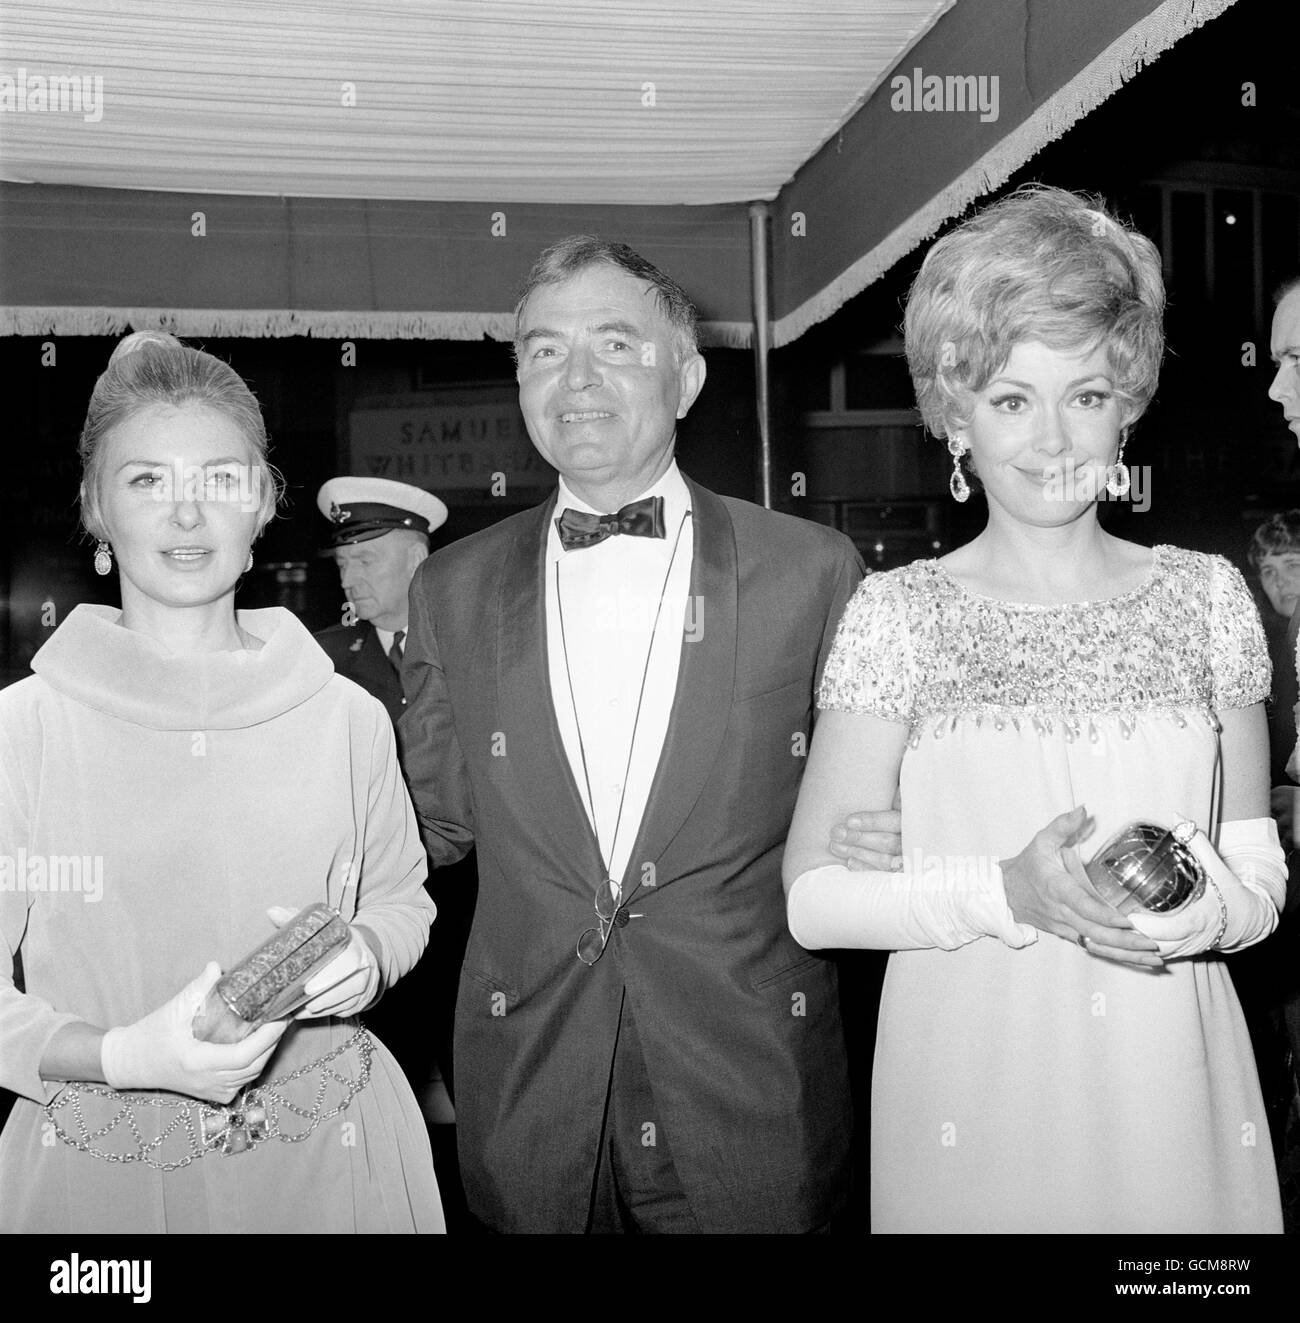 Schauspieler James Mason, Mitte, begleitet die Hollywood-Schauspielerinnen Joanne Woodward, Left, Ehefrau von Paul Newman, und Barbara Rush bei der Premiere seines neuen Films 'Mayerling'. Stockfoto